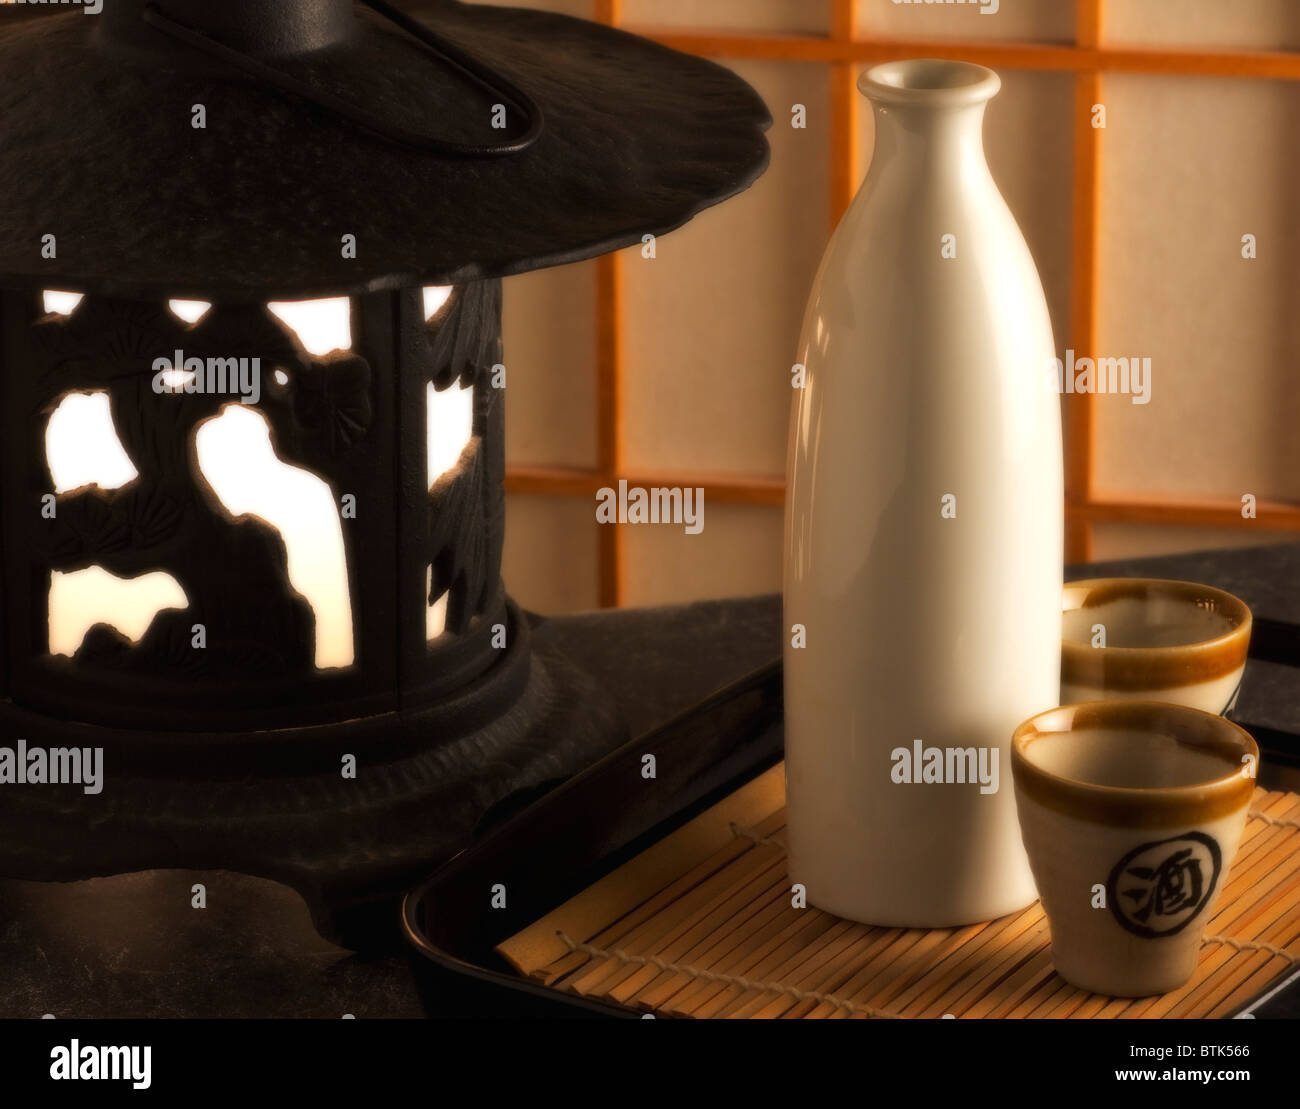 Bouteille de sake japonais et deux tasses à côté d'une lanterne en fonte Banque D'Images